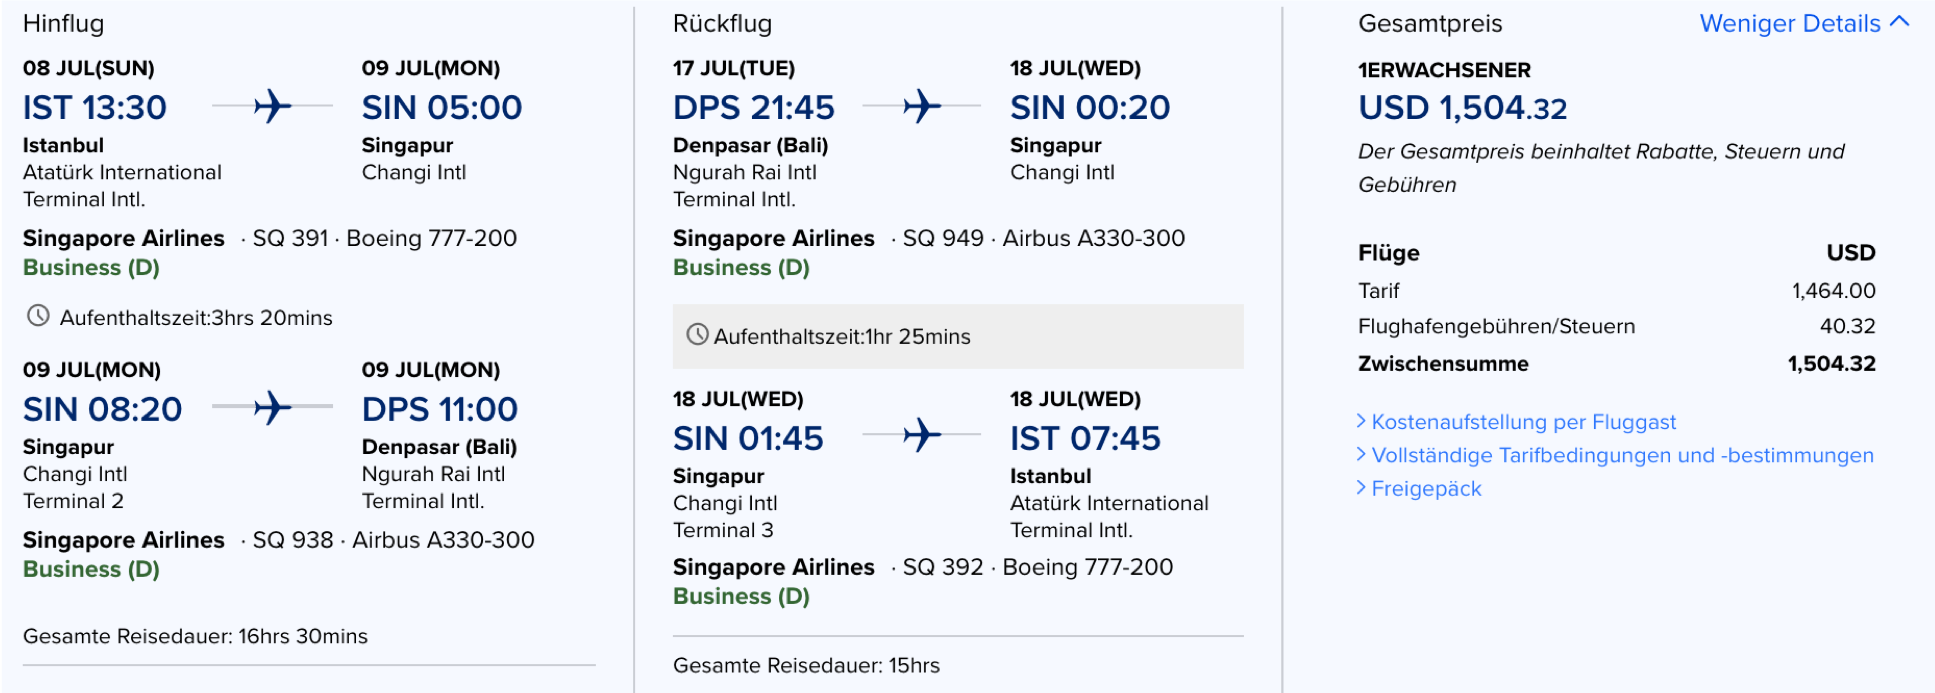 Singapore Airlines Business Class günstig fliegen